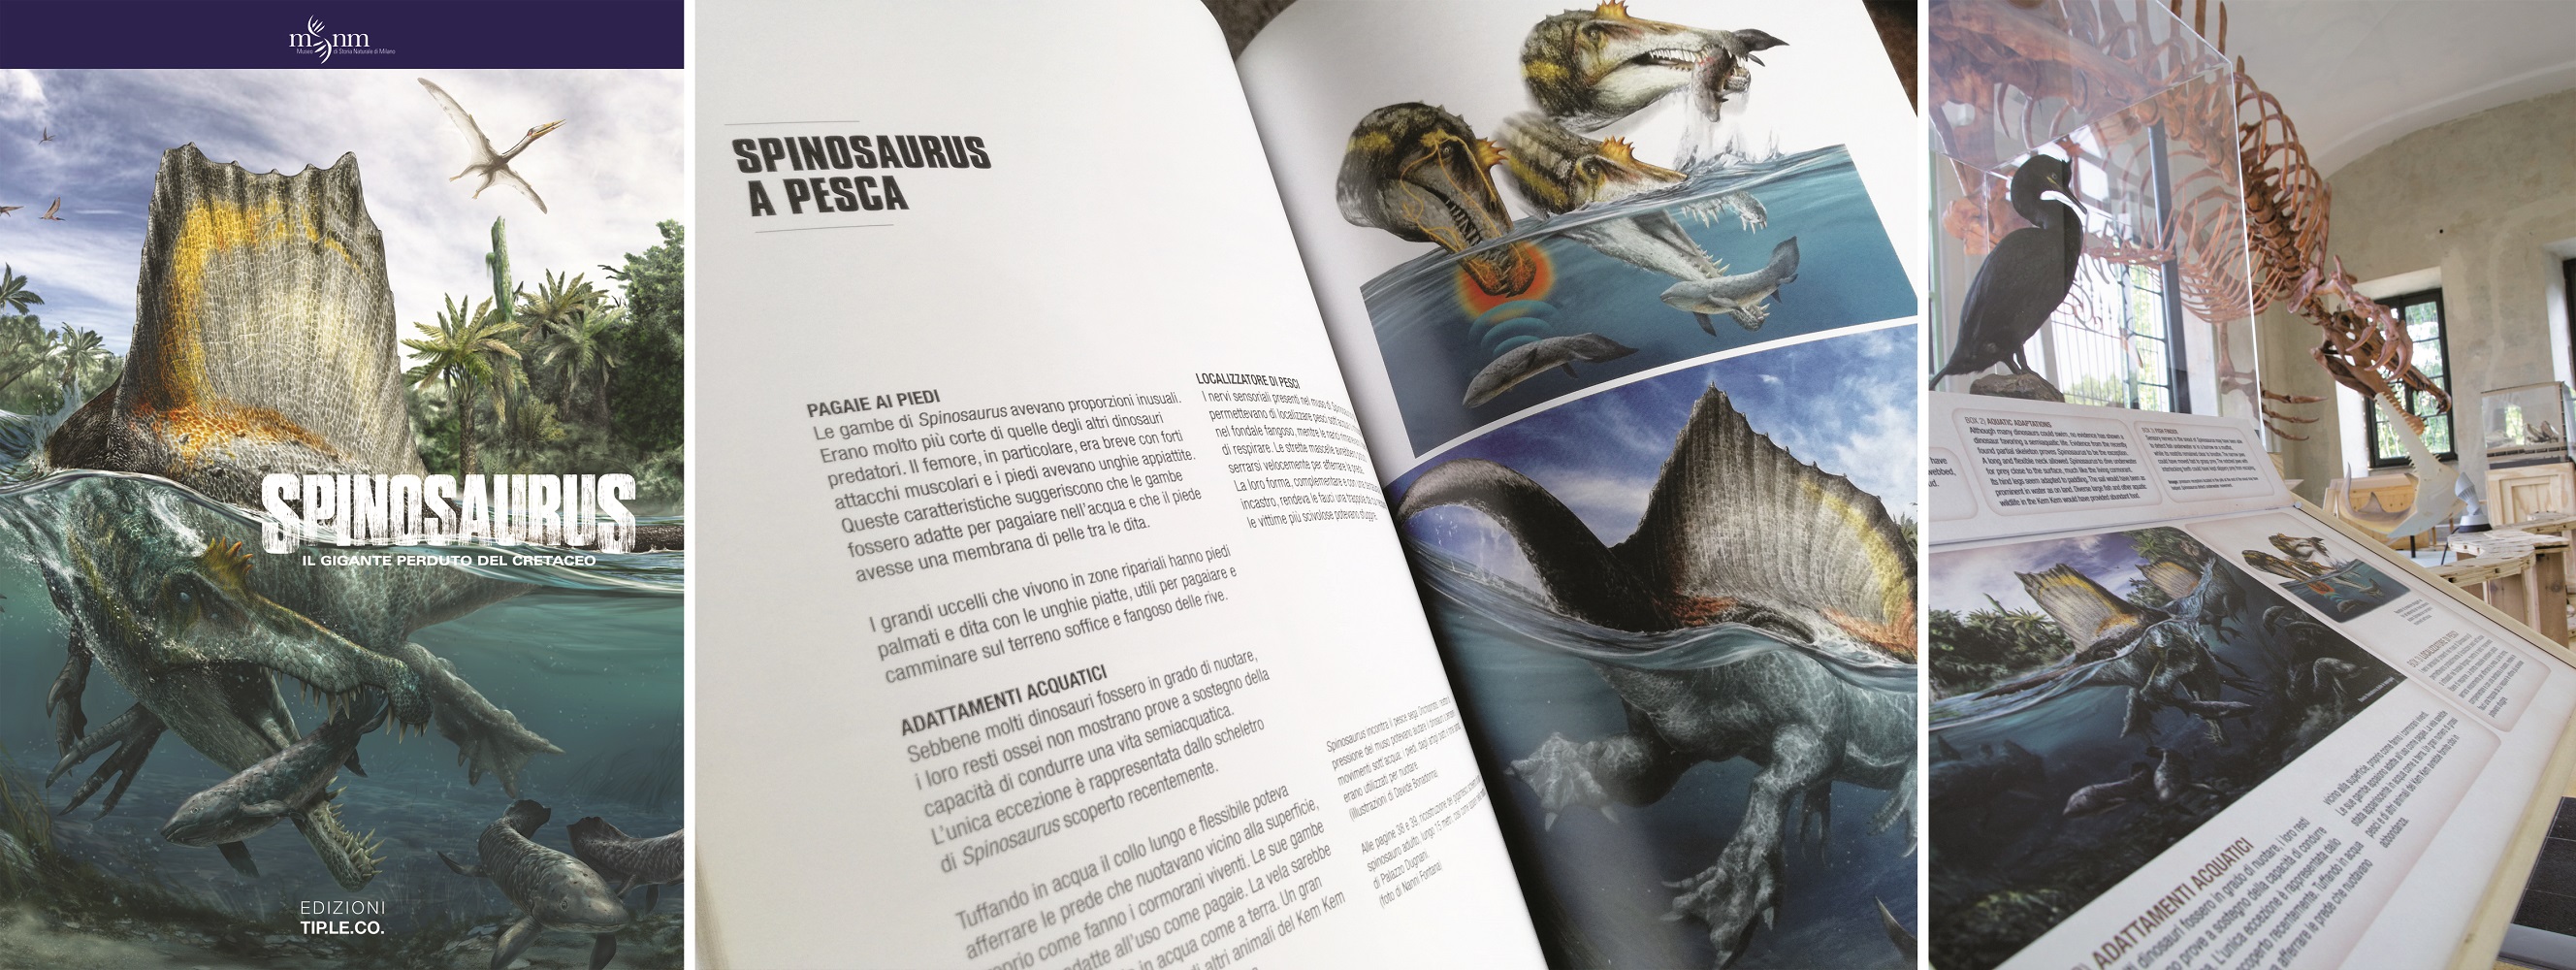 Grafiche e catalogo della mostra Spinosaurus di National Geographic